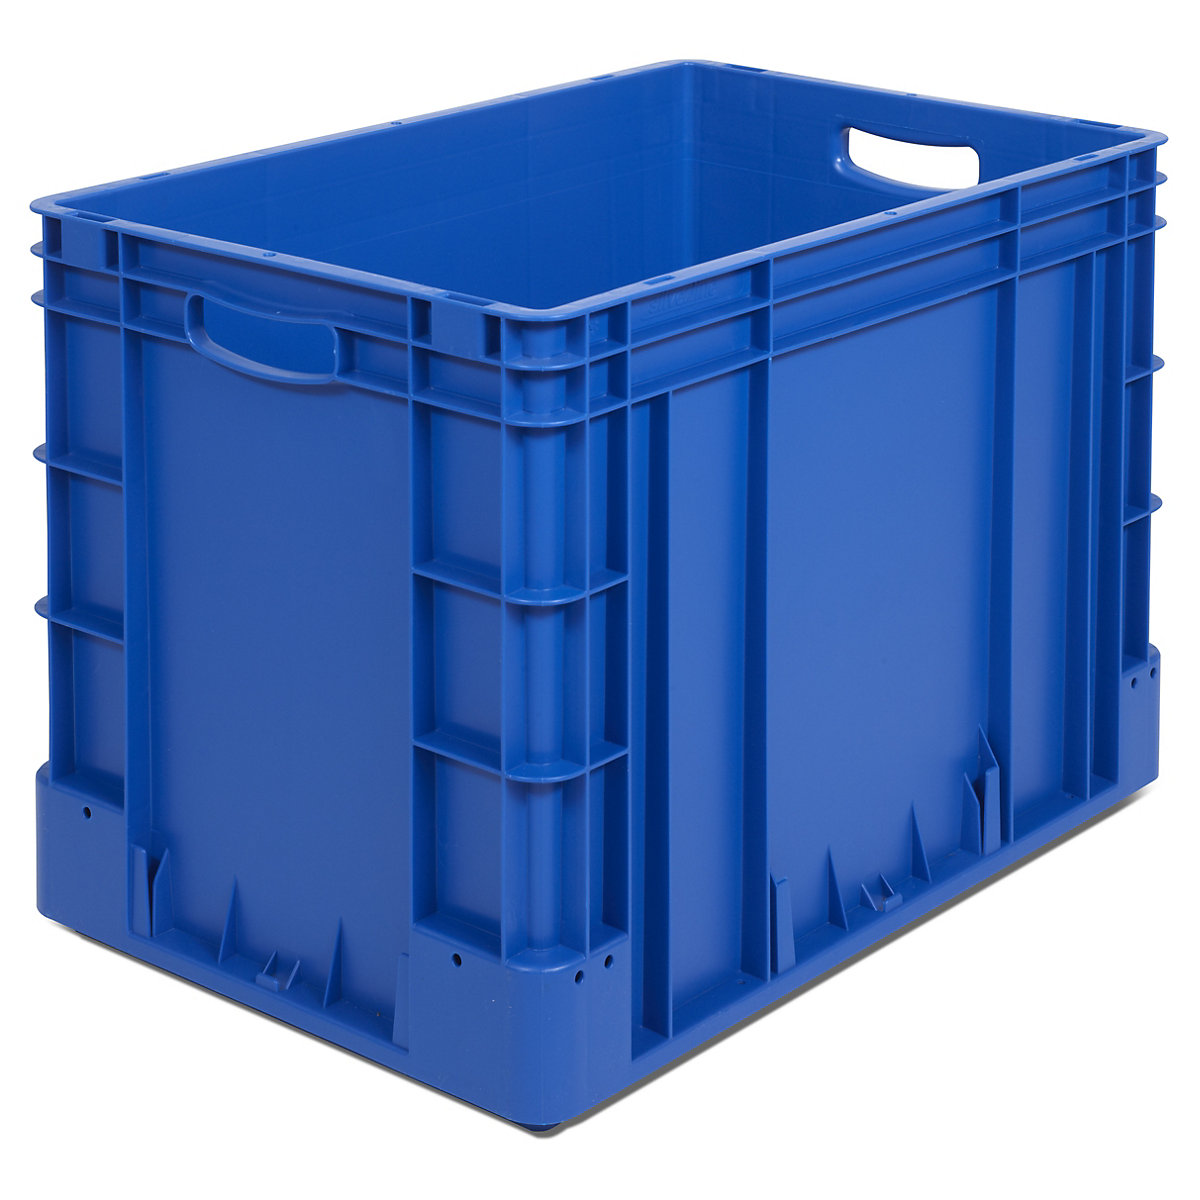 Industrijski spremnik, volumen 80 l, DxŠxV 600 x 400 x 420 mm, pak. 2 kom., u plavoj boji